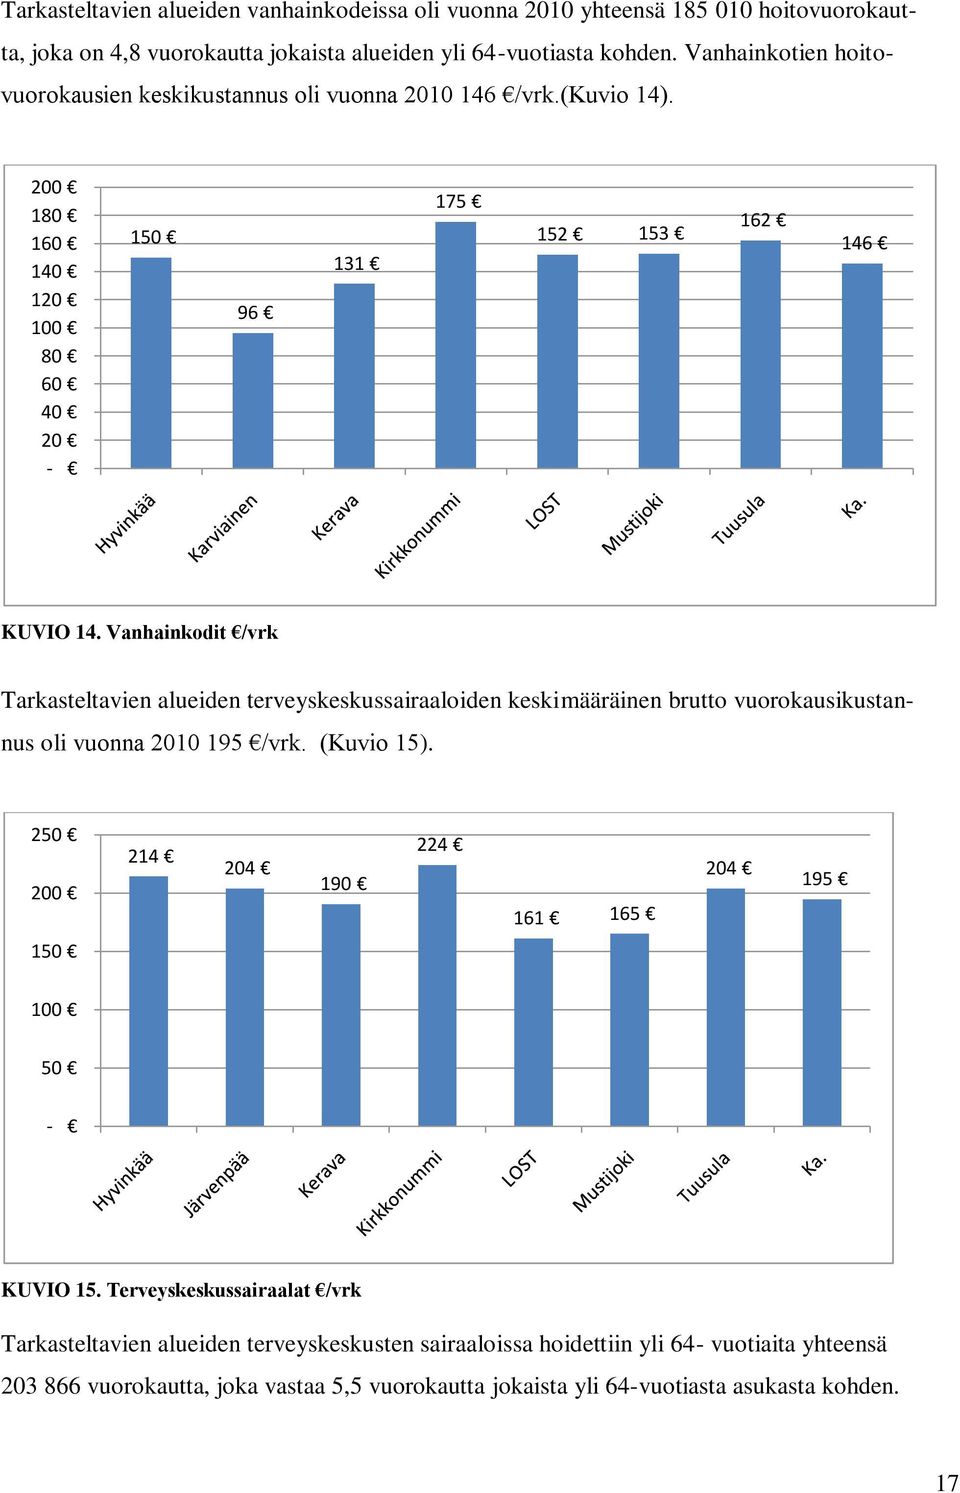 Vanhainkodit /vrk Tarkasteltavien alueiden terveyskeskussairaaloiden keskimääräinen brutto vuorokausikustannus oli vuonna 2010 195 /vrk. (Kuvio 15).